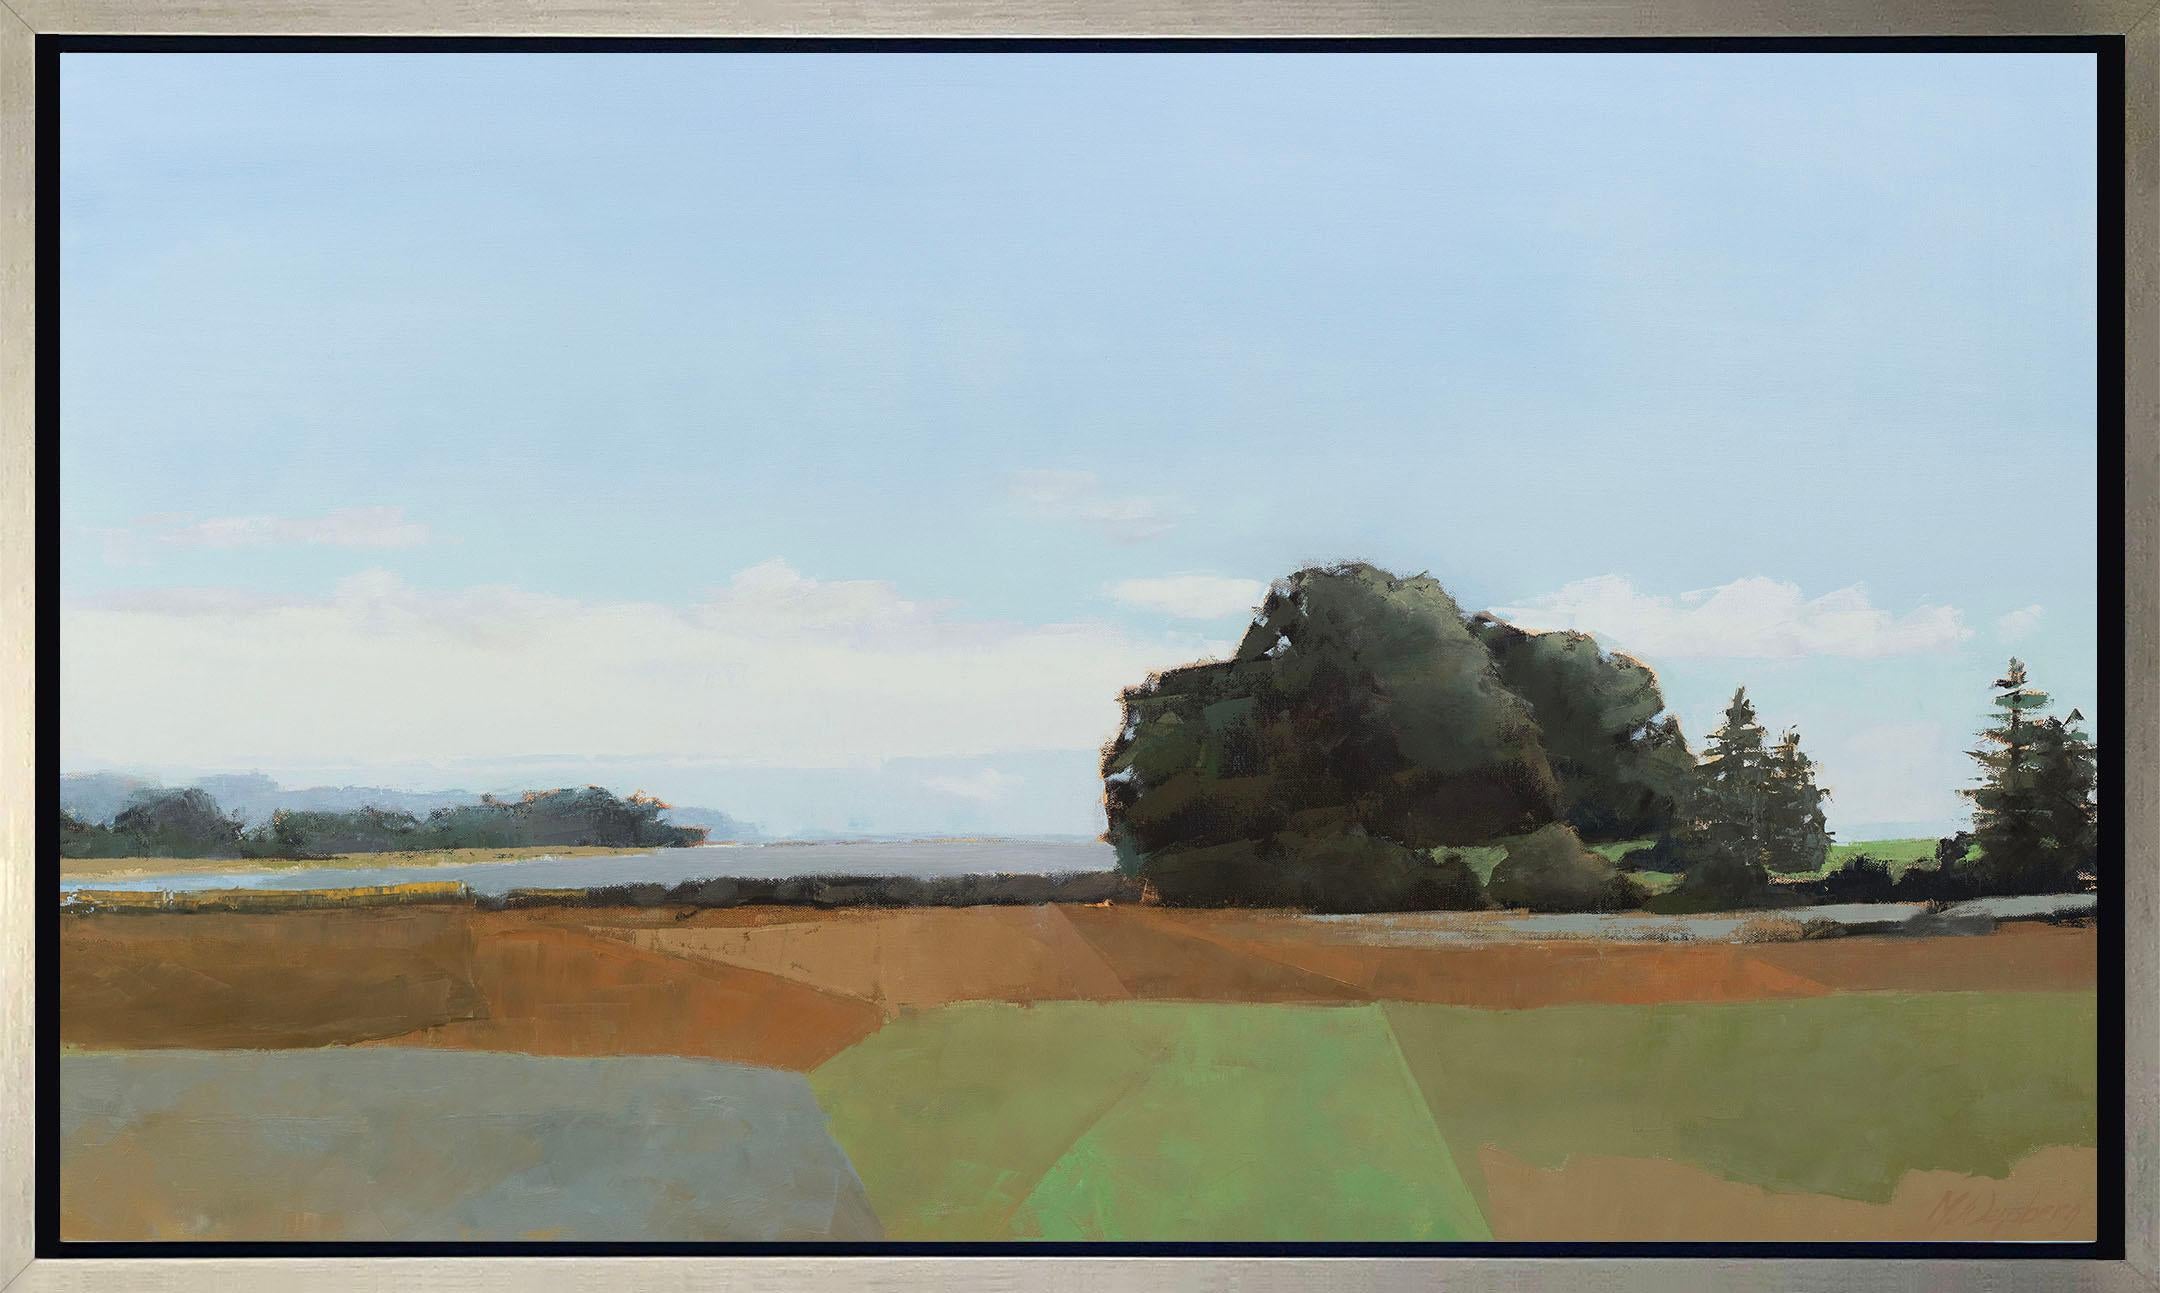 Diese limitierte Auflage des Giclée-Landschaftsdrucks von Molly Doe Wensberg hat eine Auflagenhöhe von 195. Es ist in kühlen Blau- und Erdtönen gehalten und zeigt eine Landschaftsszene mit üppigem Laub und wogenden Feldern unter einem blauen Himmel,